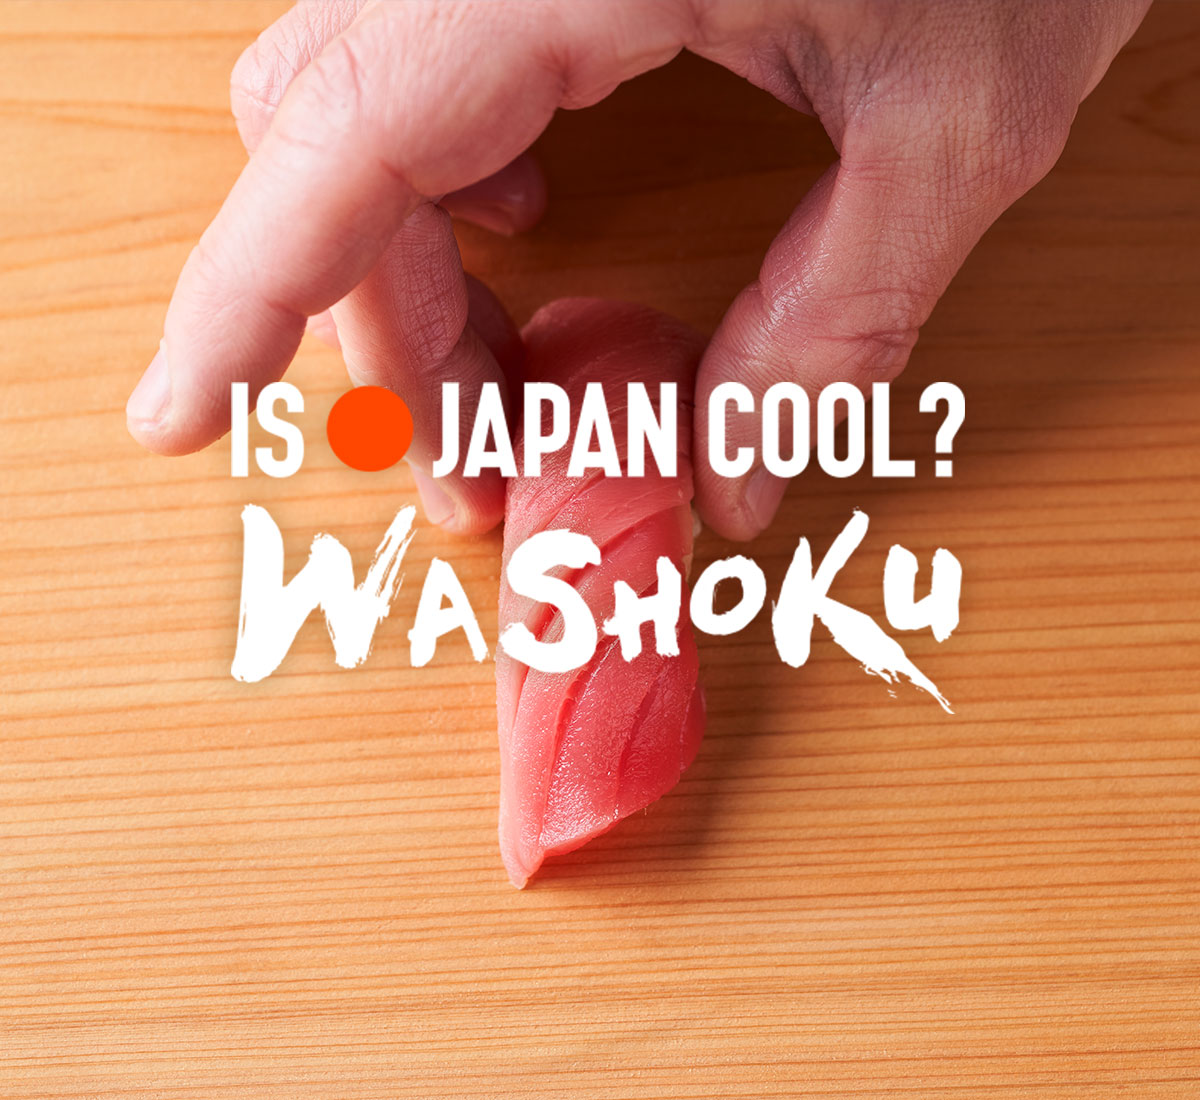 IS JAPAN COOL? WASHOKU